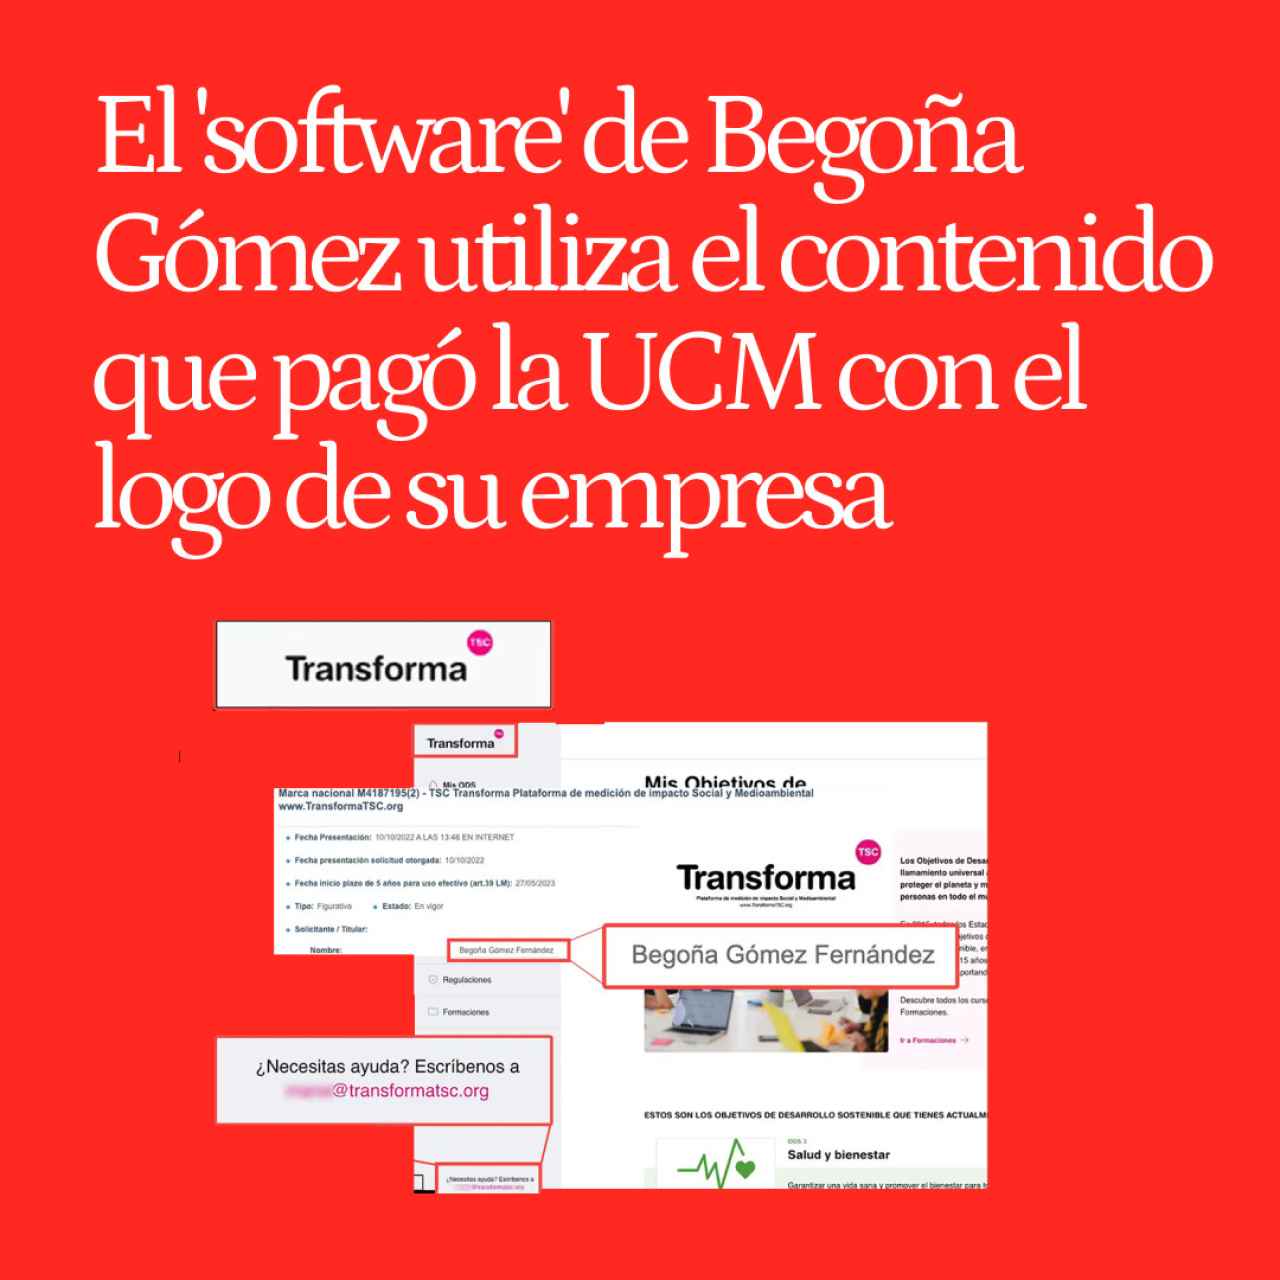 El 'software' de Begoña Gómez utiliza el contenido que pagó la UCM con el logo y mail de su empresa